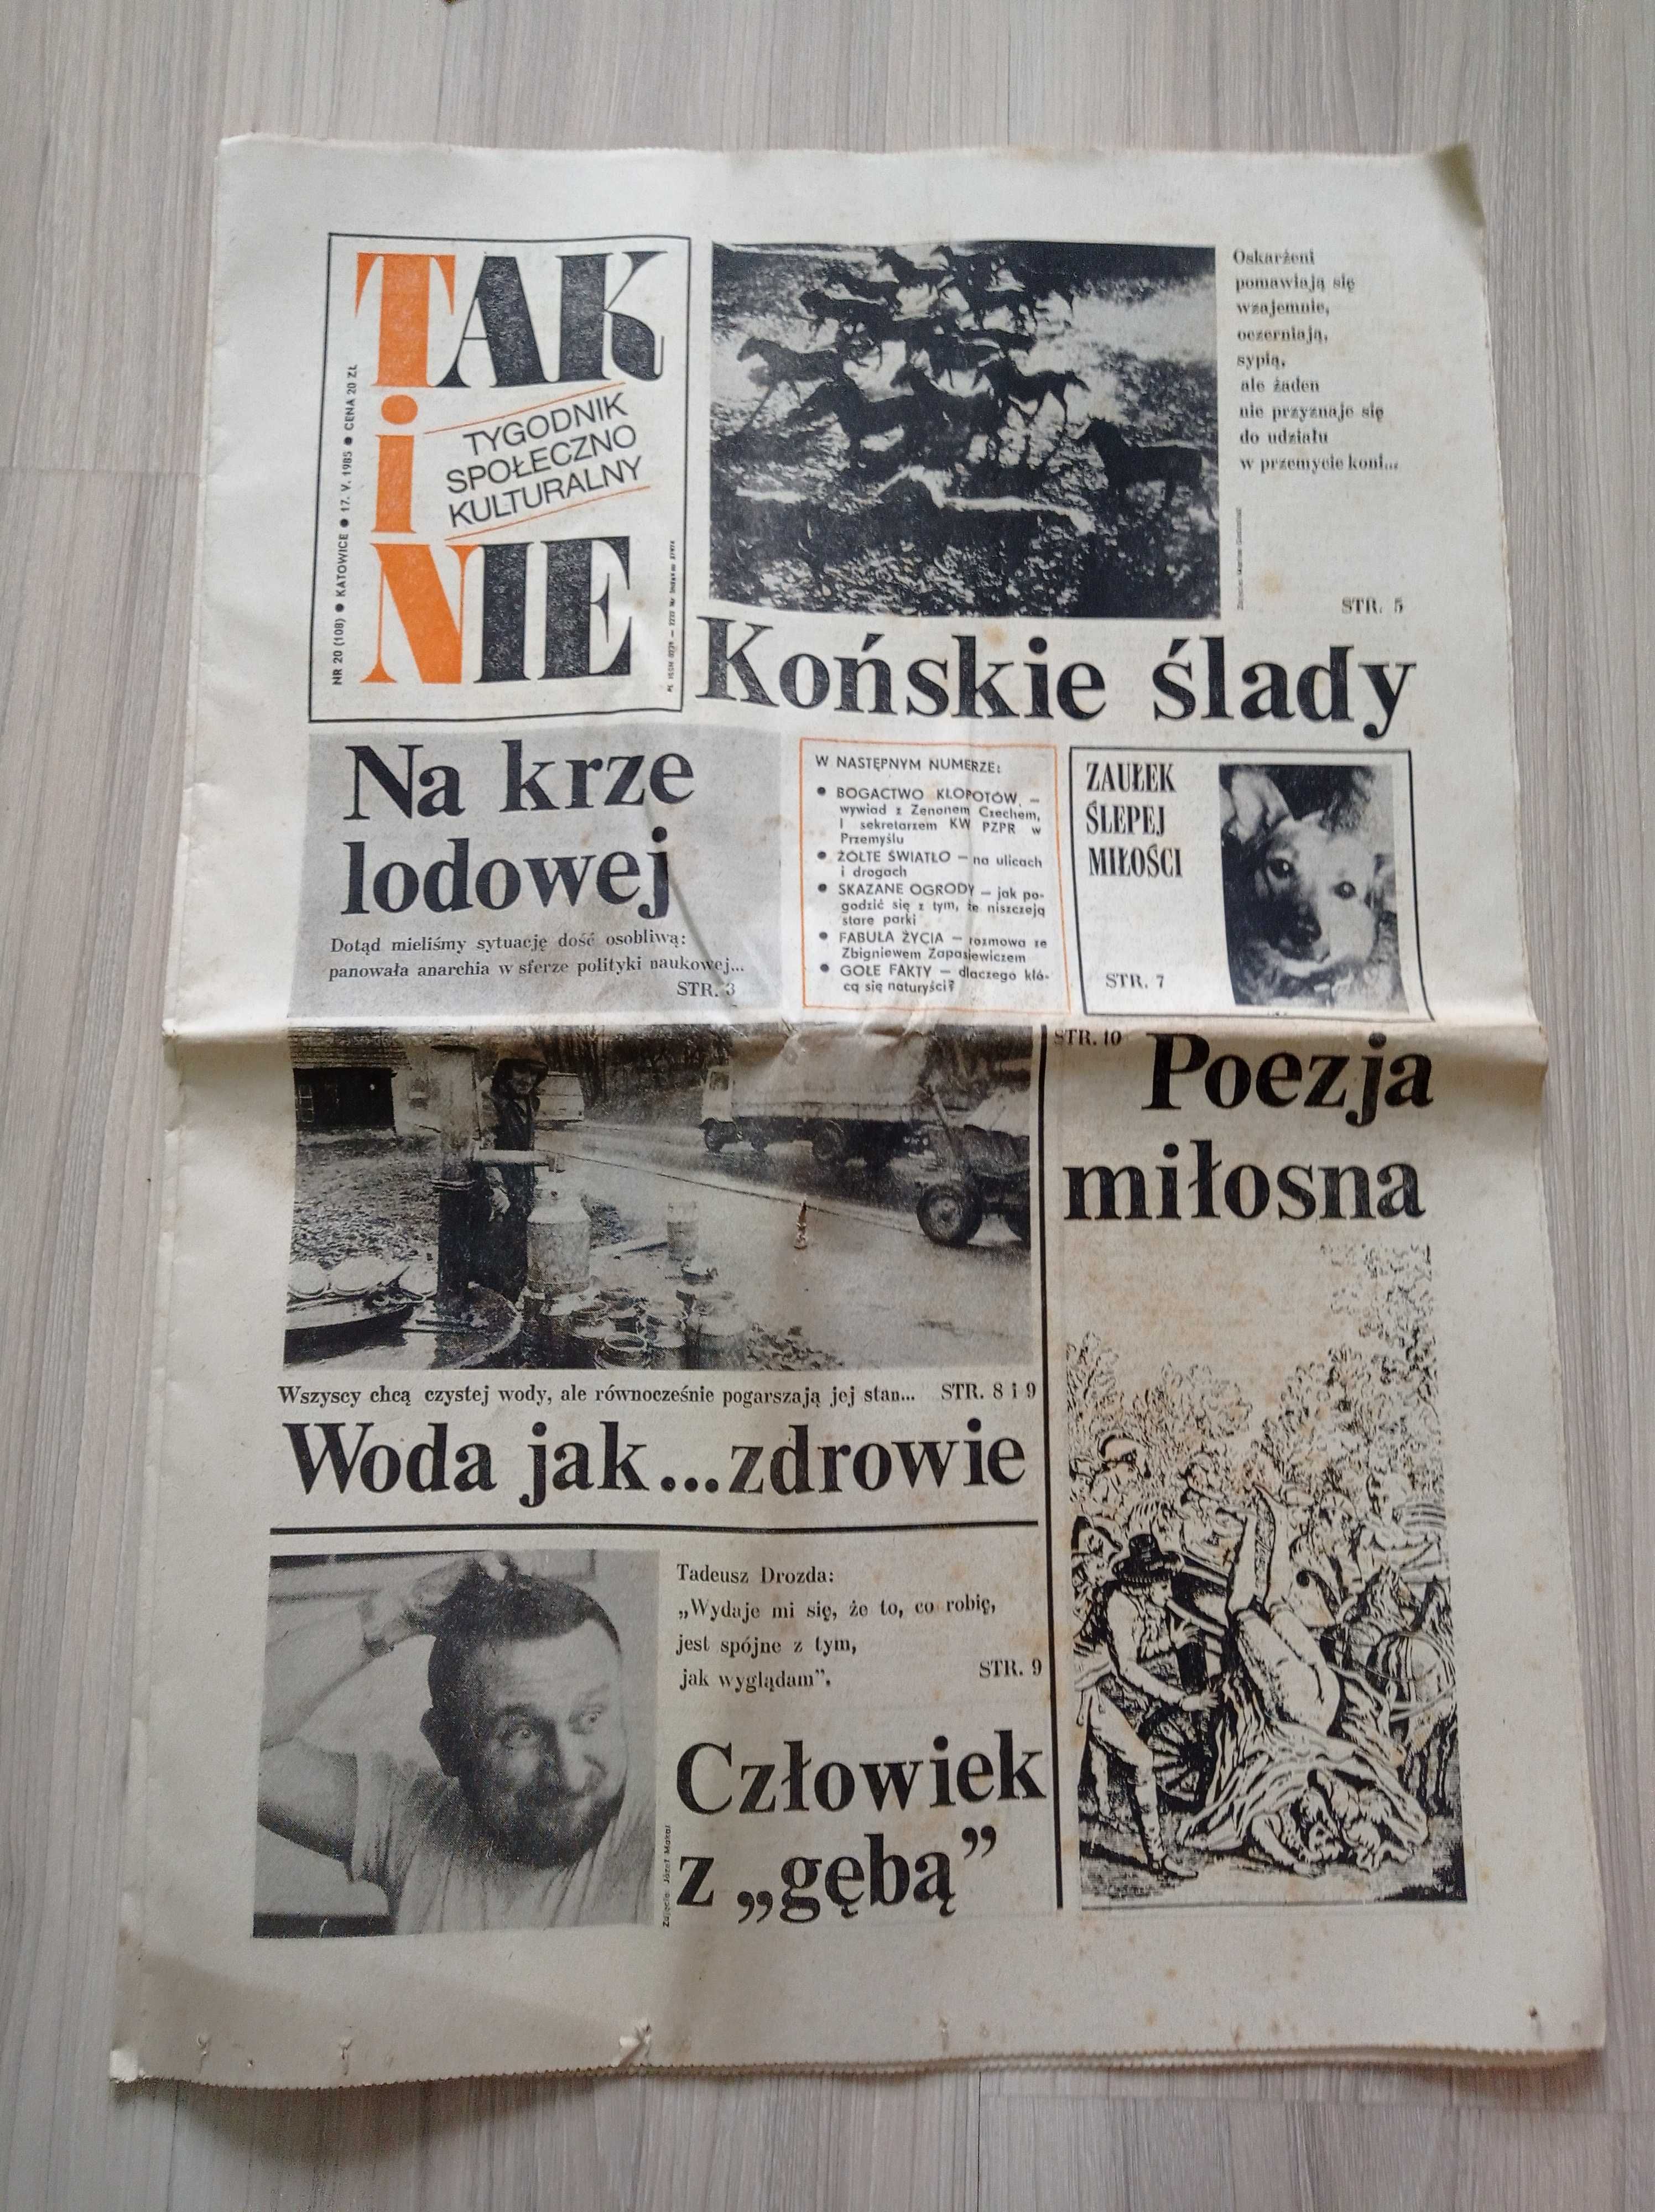 Tak i nie, tygodnik, nr 20/1985, 17 maja 1985